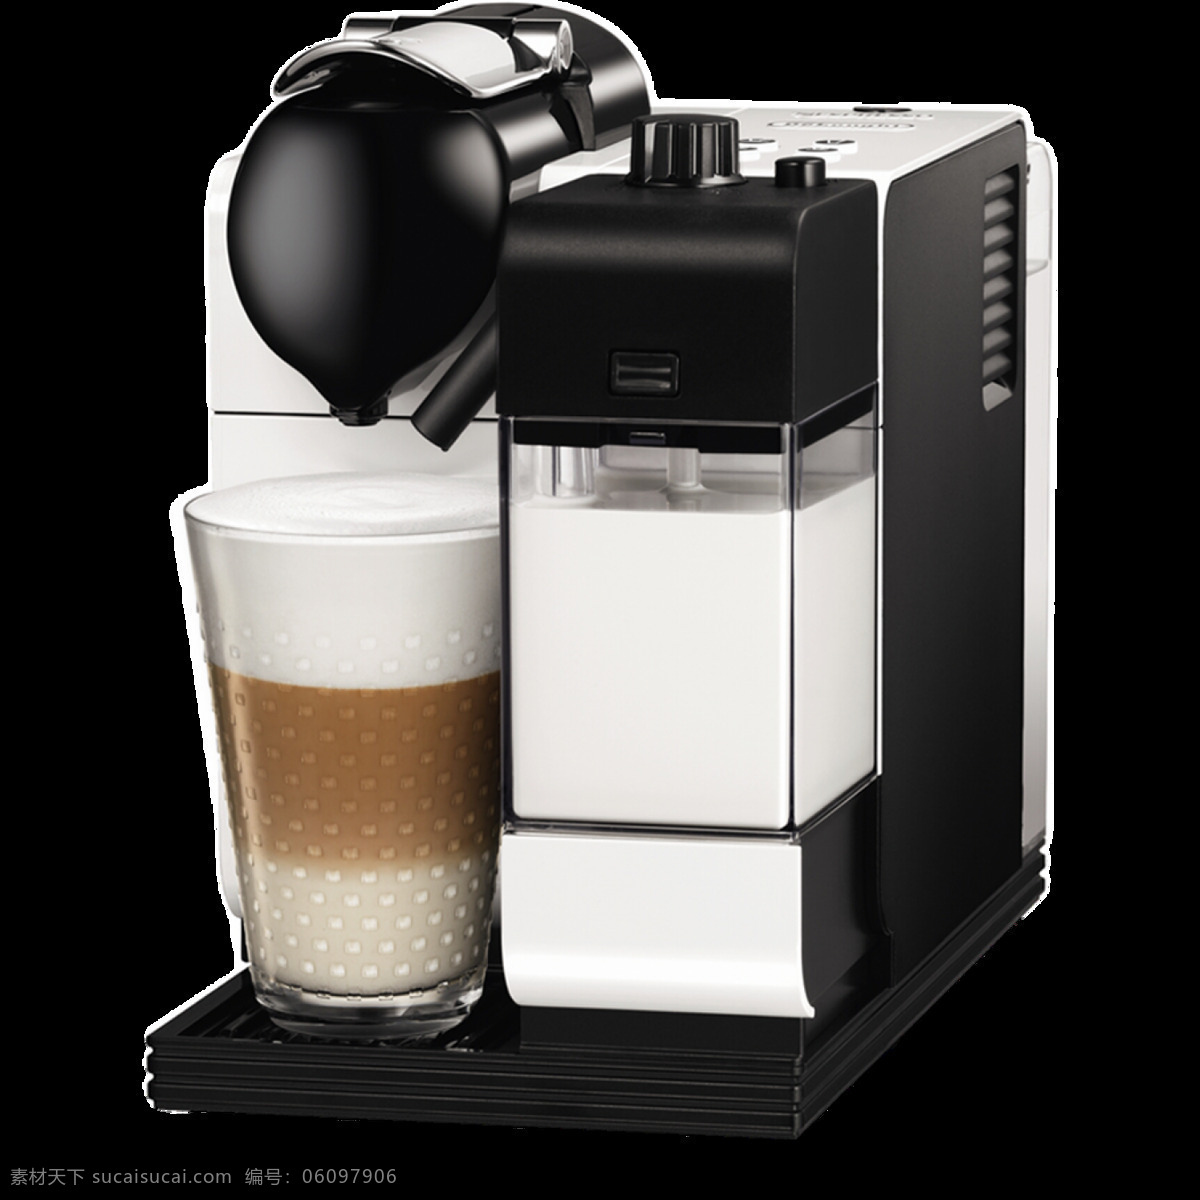 咖啡机 免 抠 透明 图 层 t3咖啡机 煮咖啡机 手工咖啡机 飞利浦咖啡机 胶囊式咖啡机 咖啡机素材 欧式咖啡机 自动 贩卖 咖啡机图片 家用咖啡机